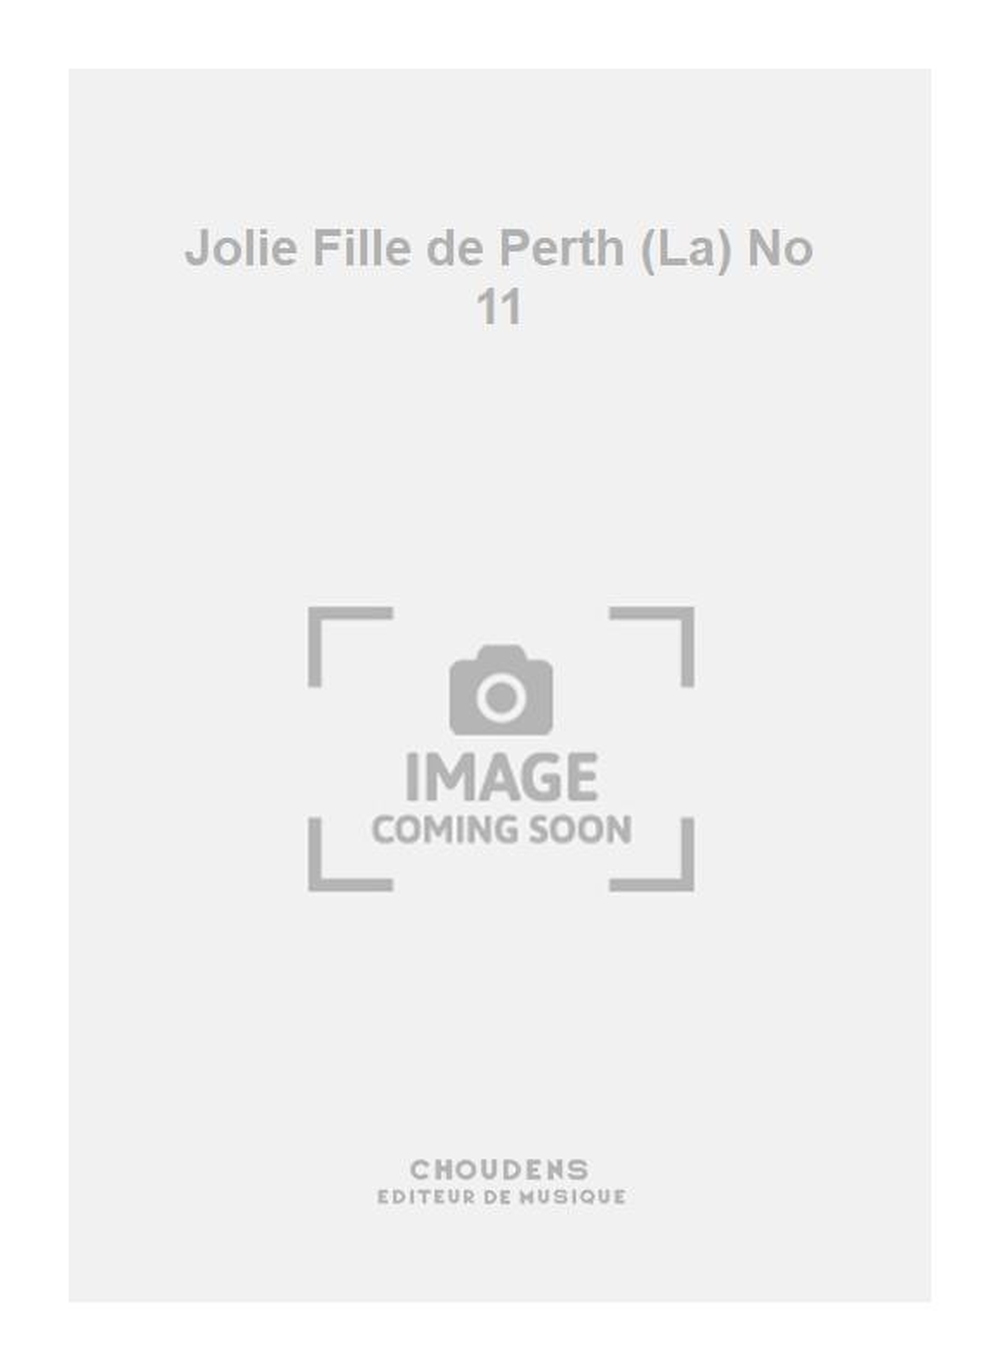 Georges Bizet: Jolie Fille de Perth (La) No 11